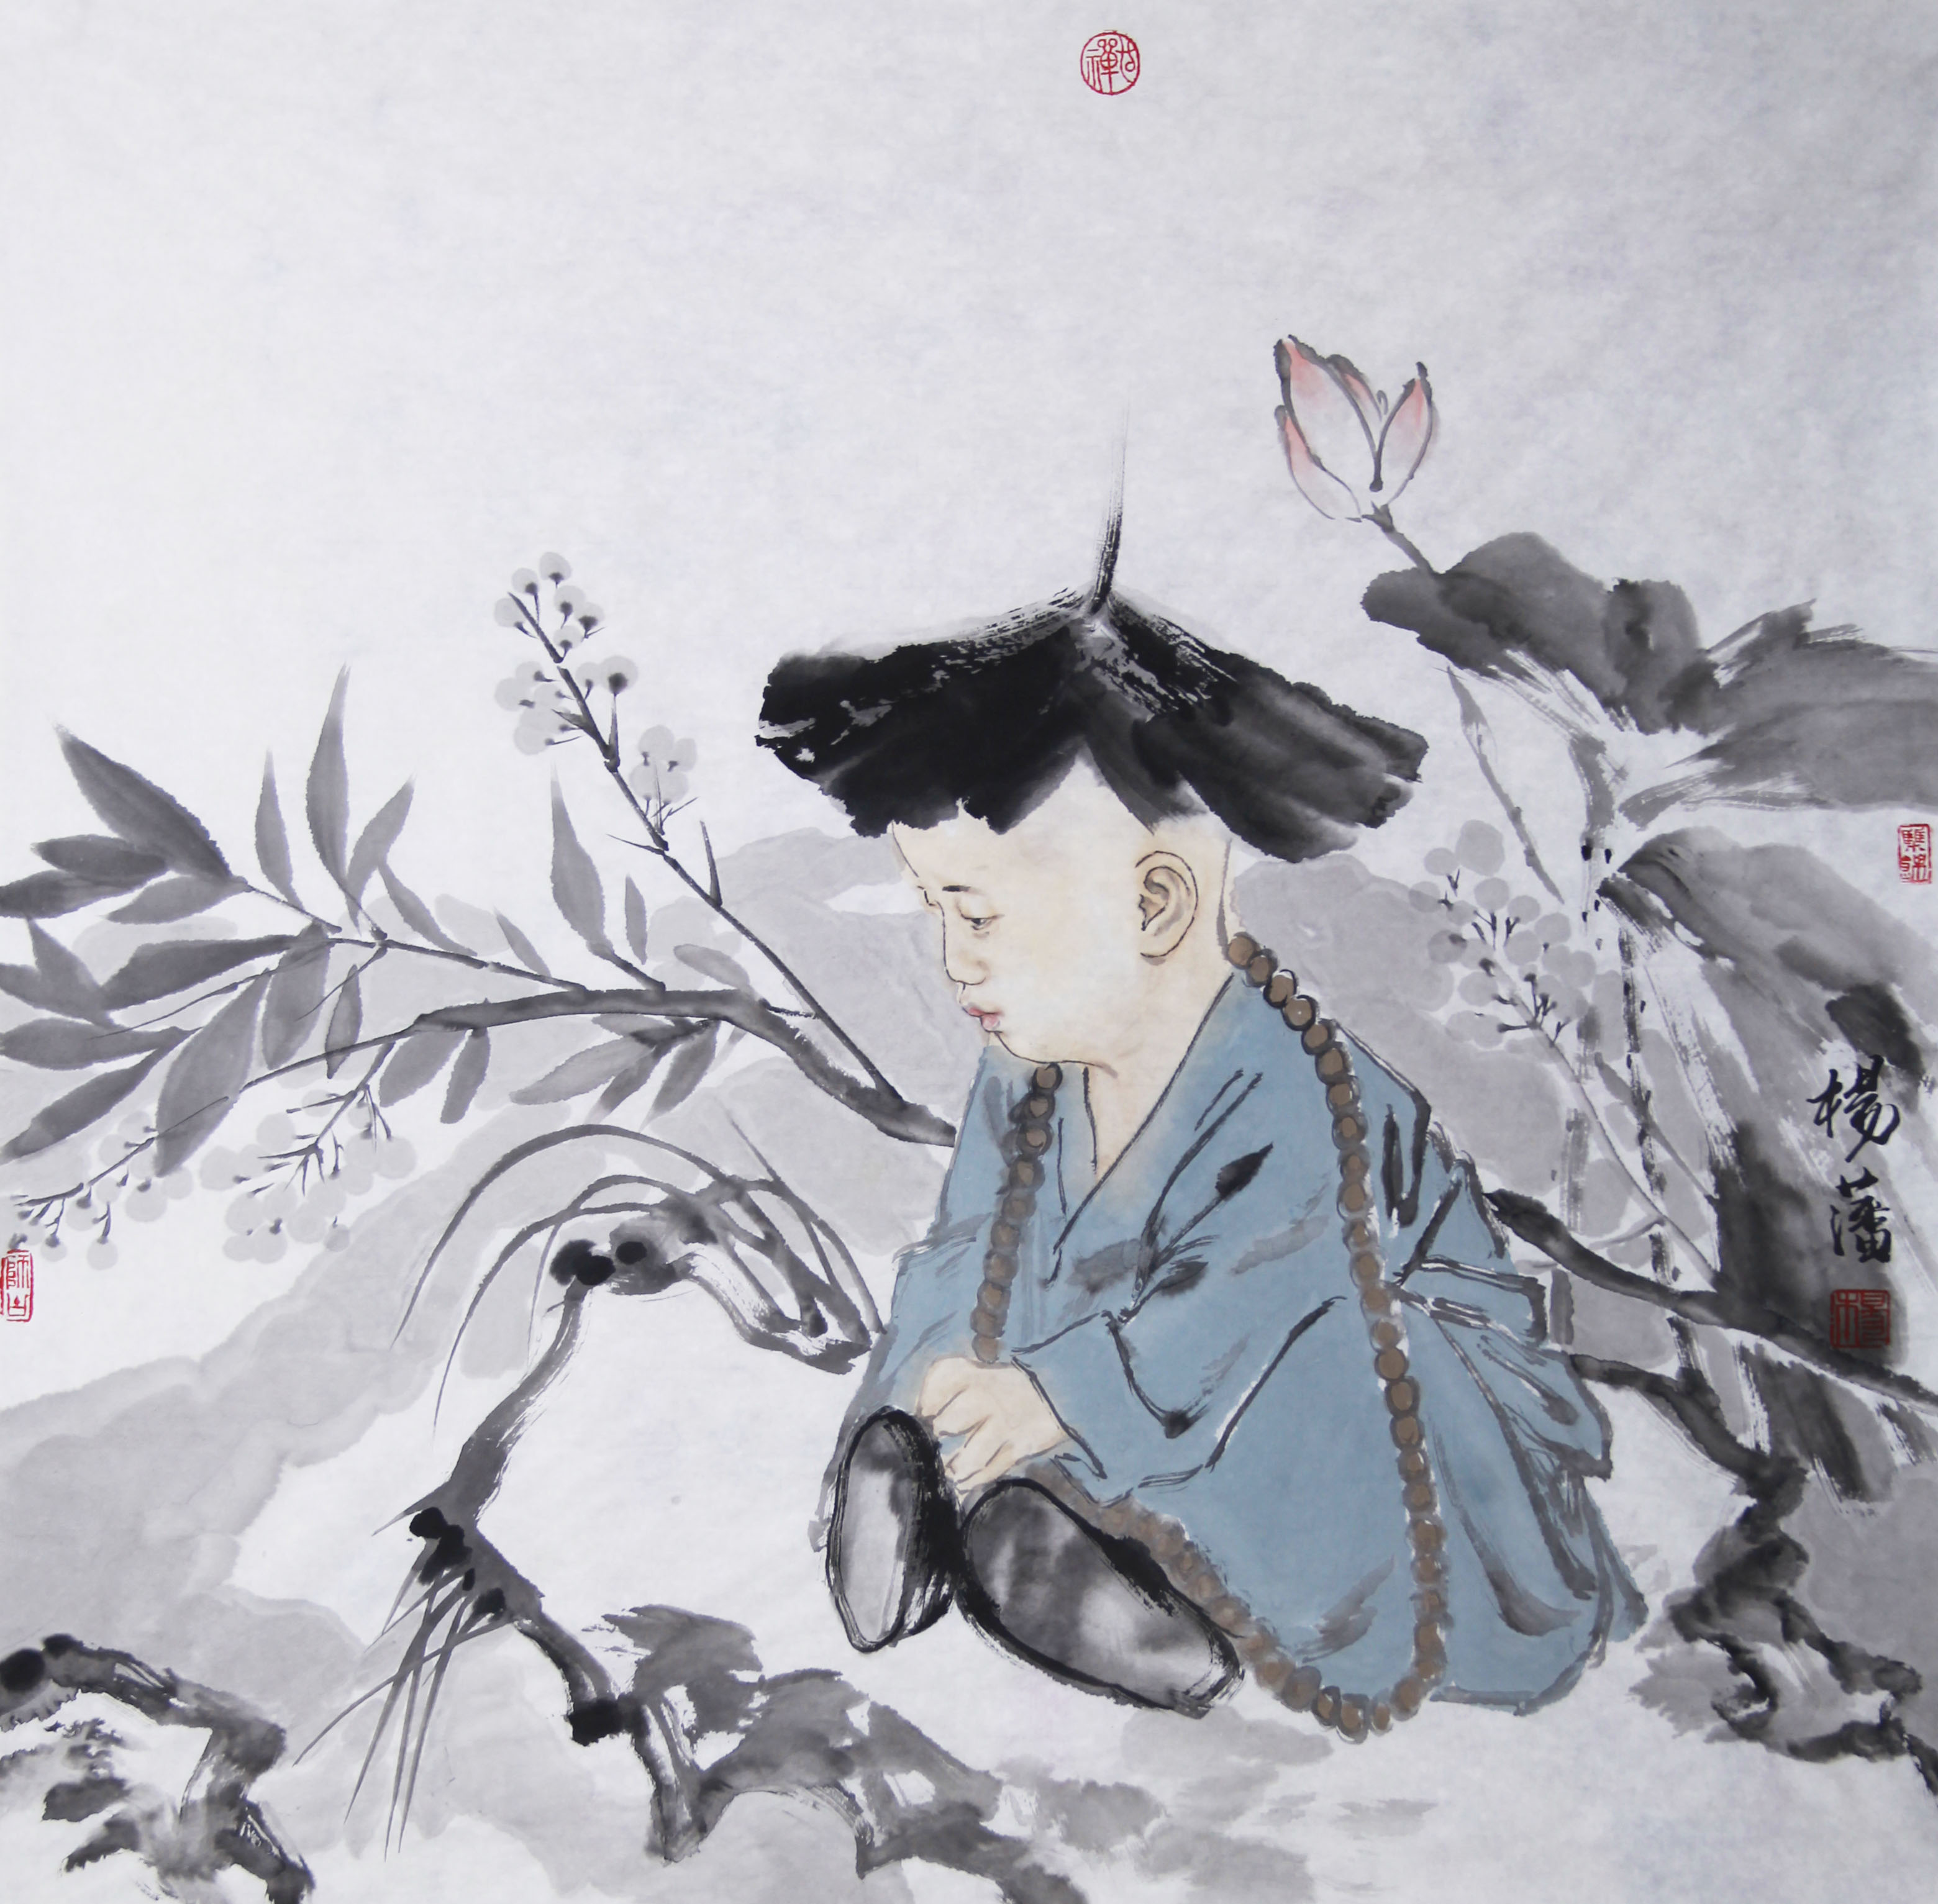 小沙弥——杨藩笔下的写实水墨人物画欣赏:沙弥是释迦牟尼的儿子罗睺